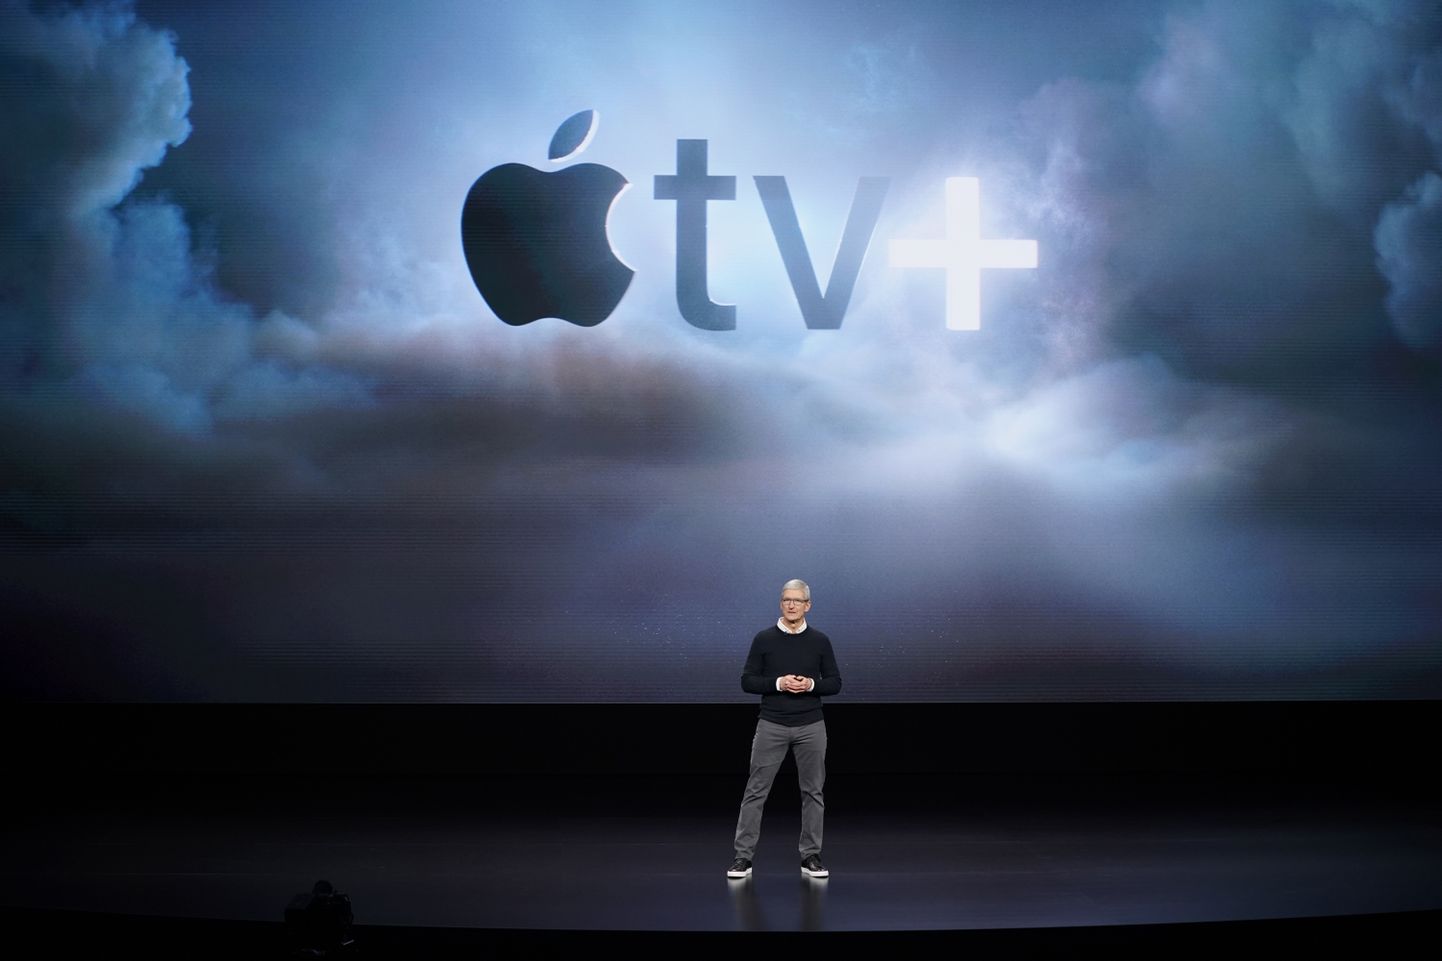 Apple'i tegevjuht Tim Cook tuvustas ettevõtte peakorteris Cupertinos, Californias uut voogedastusplatvormi Apple tv+.